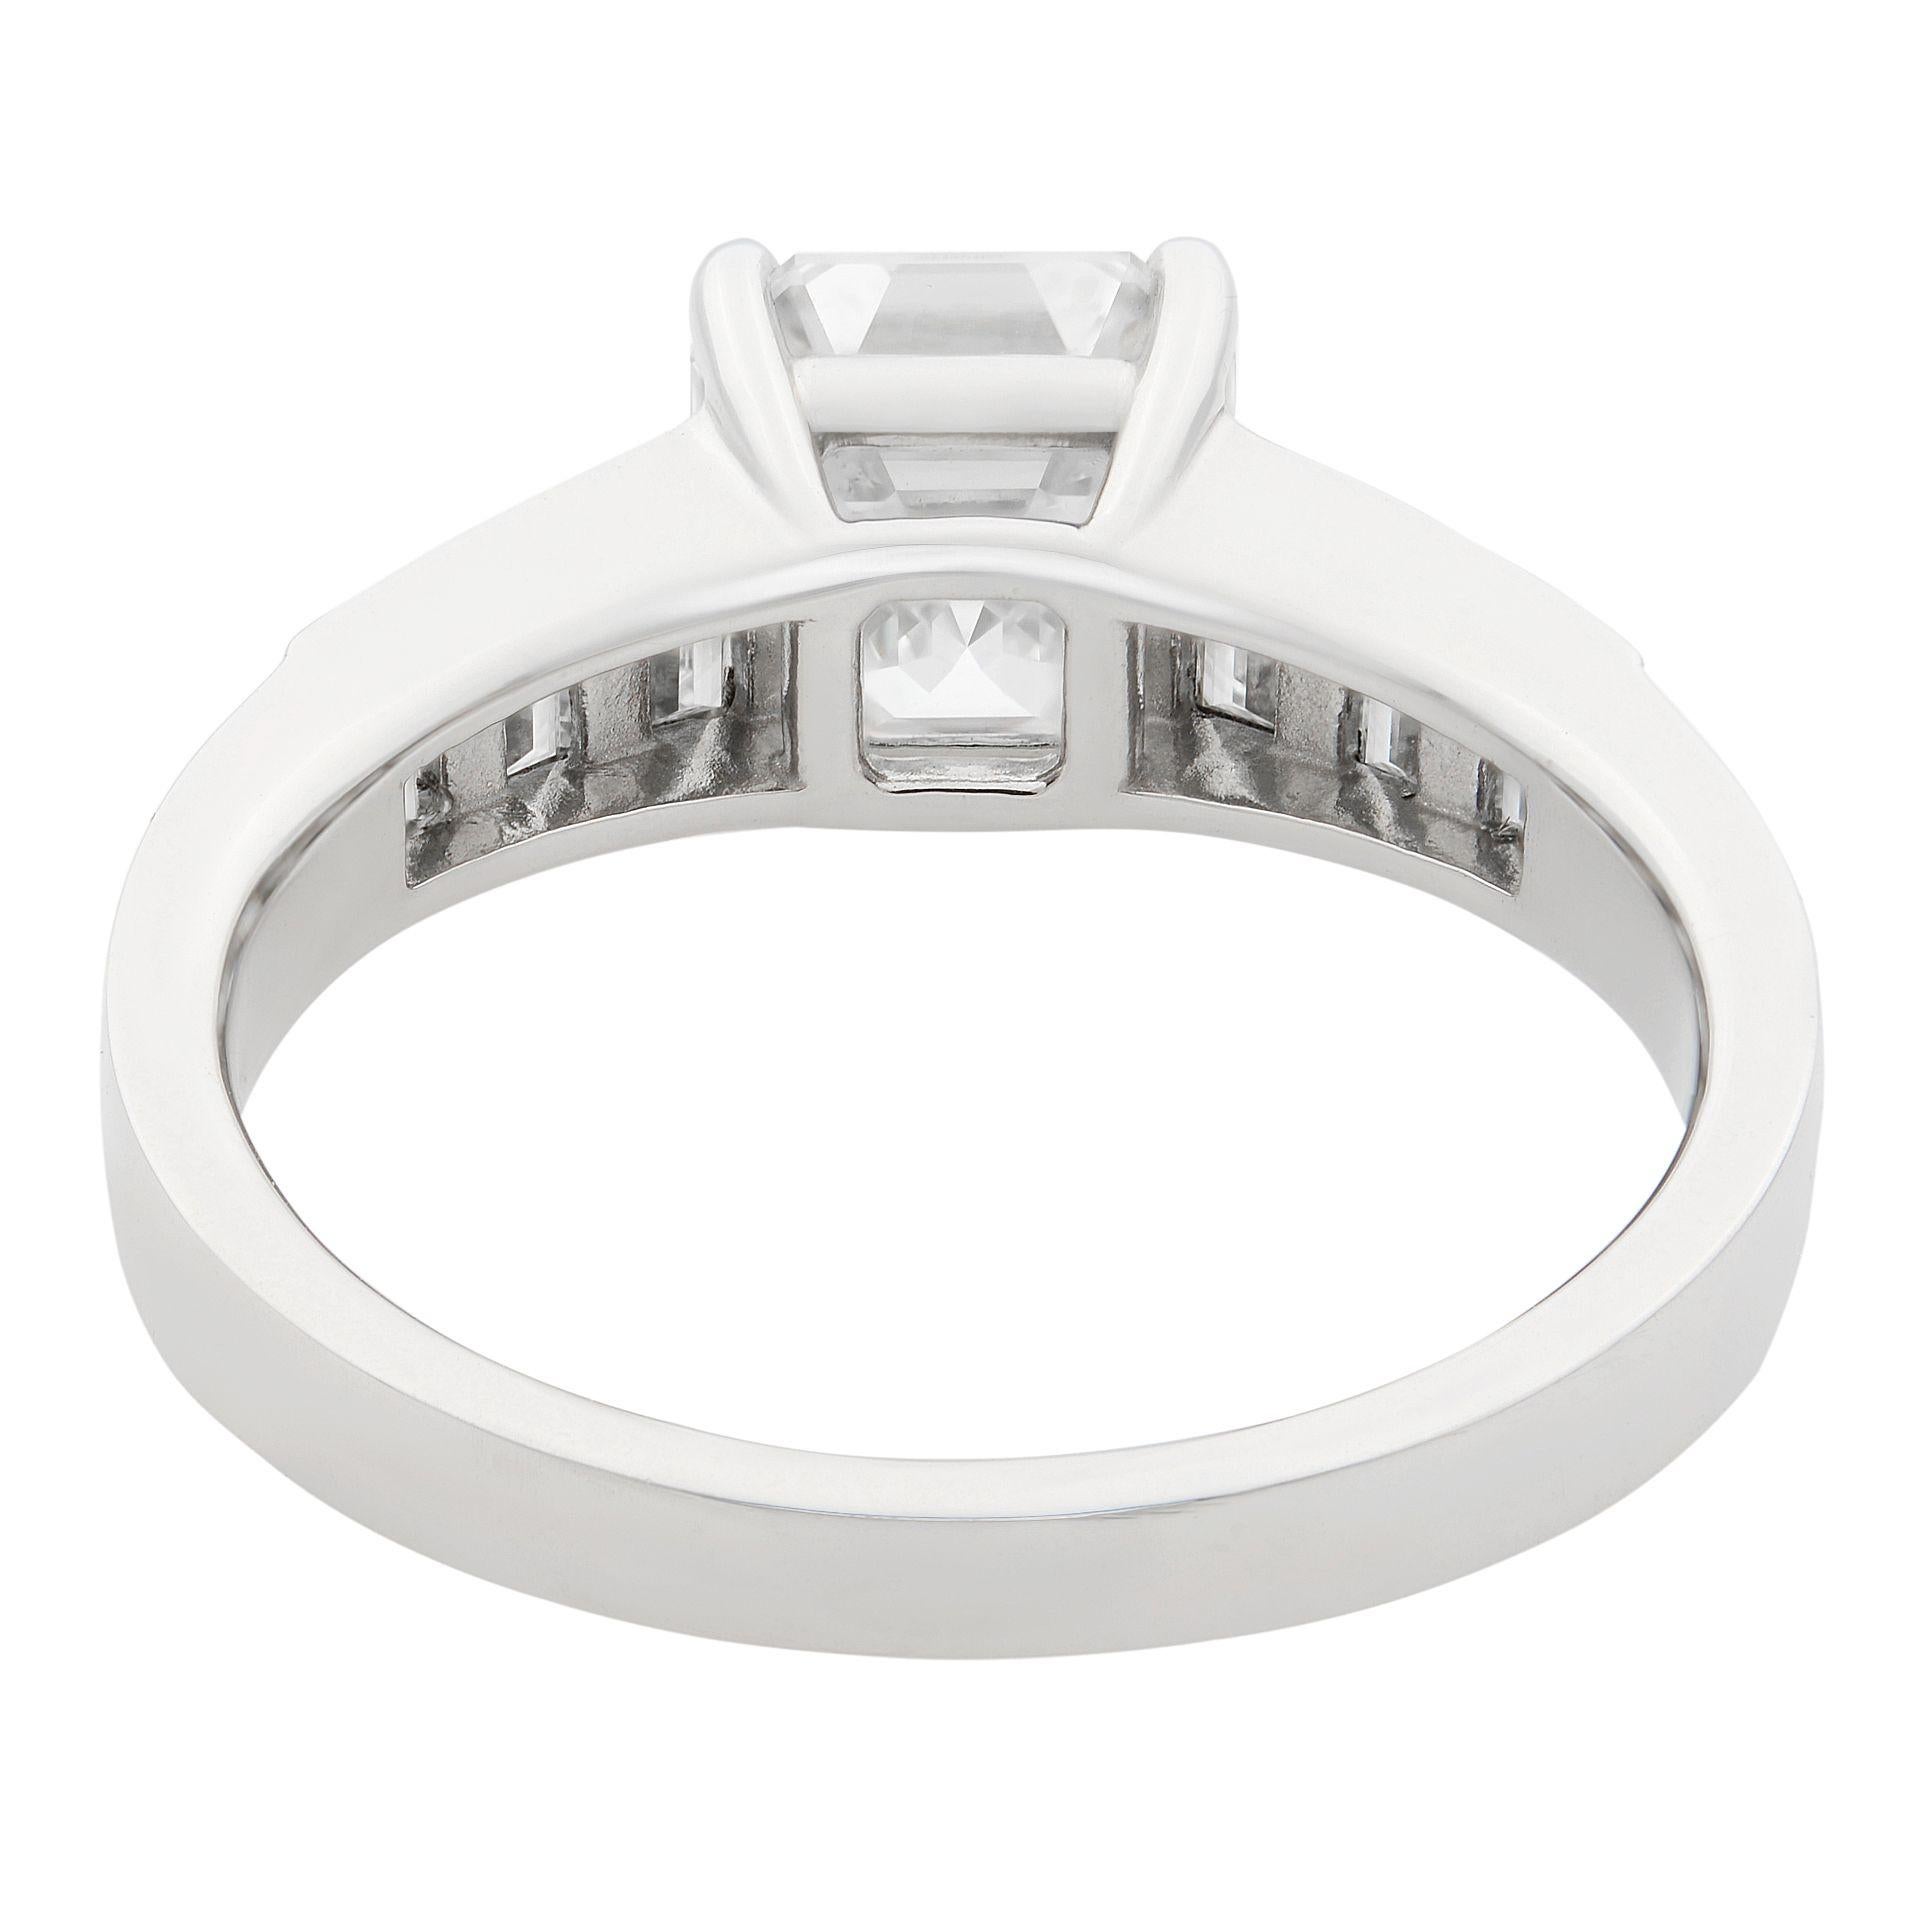 Asscher Cut Rachel Koen 18 Karat White Gold Square Emerald Cut Diamond Ring 2.21 Carat